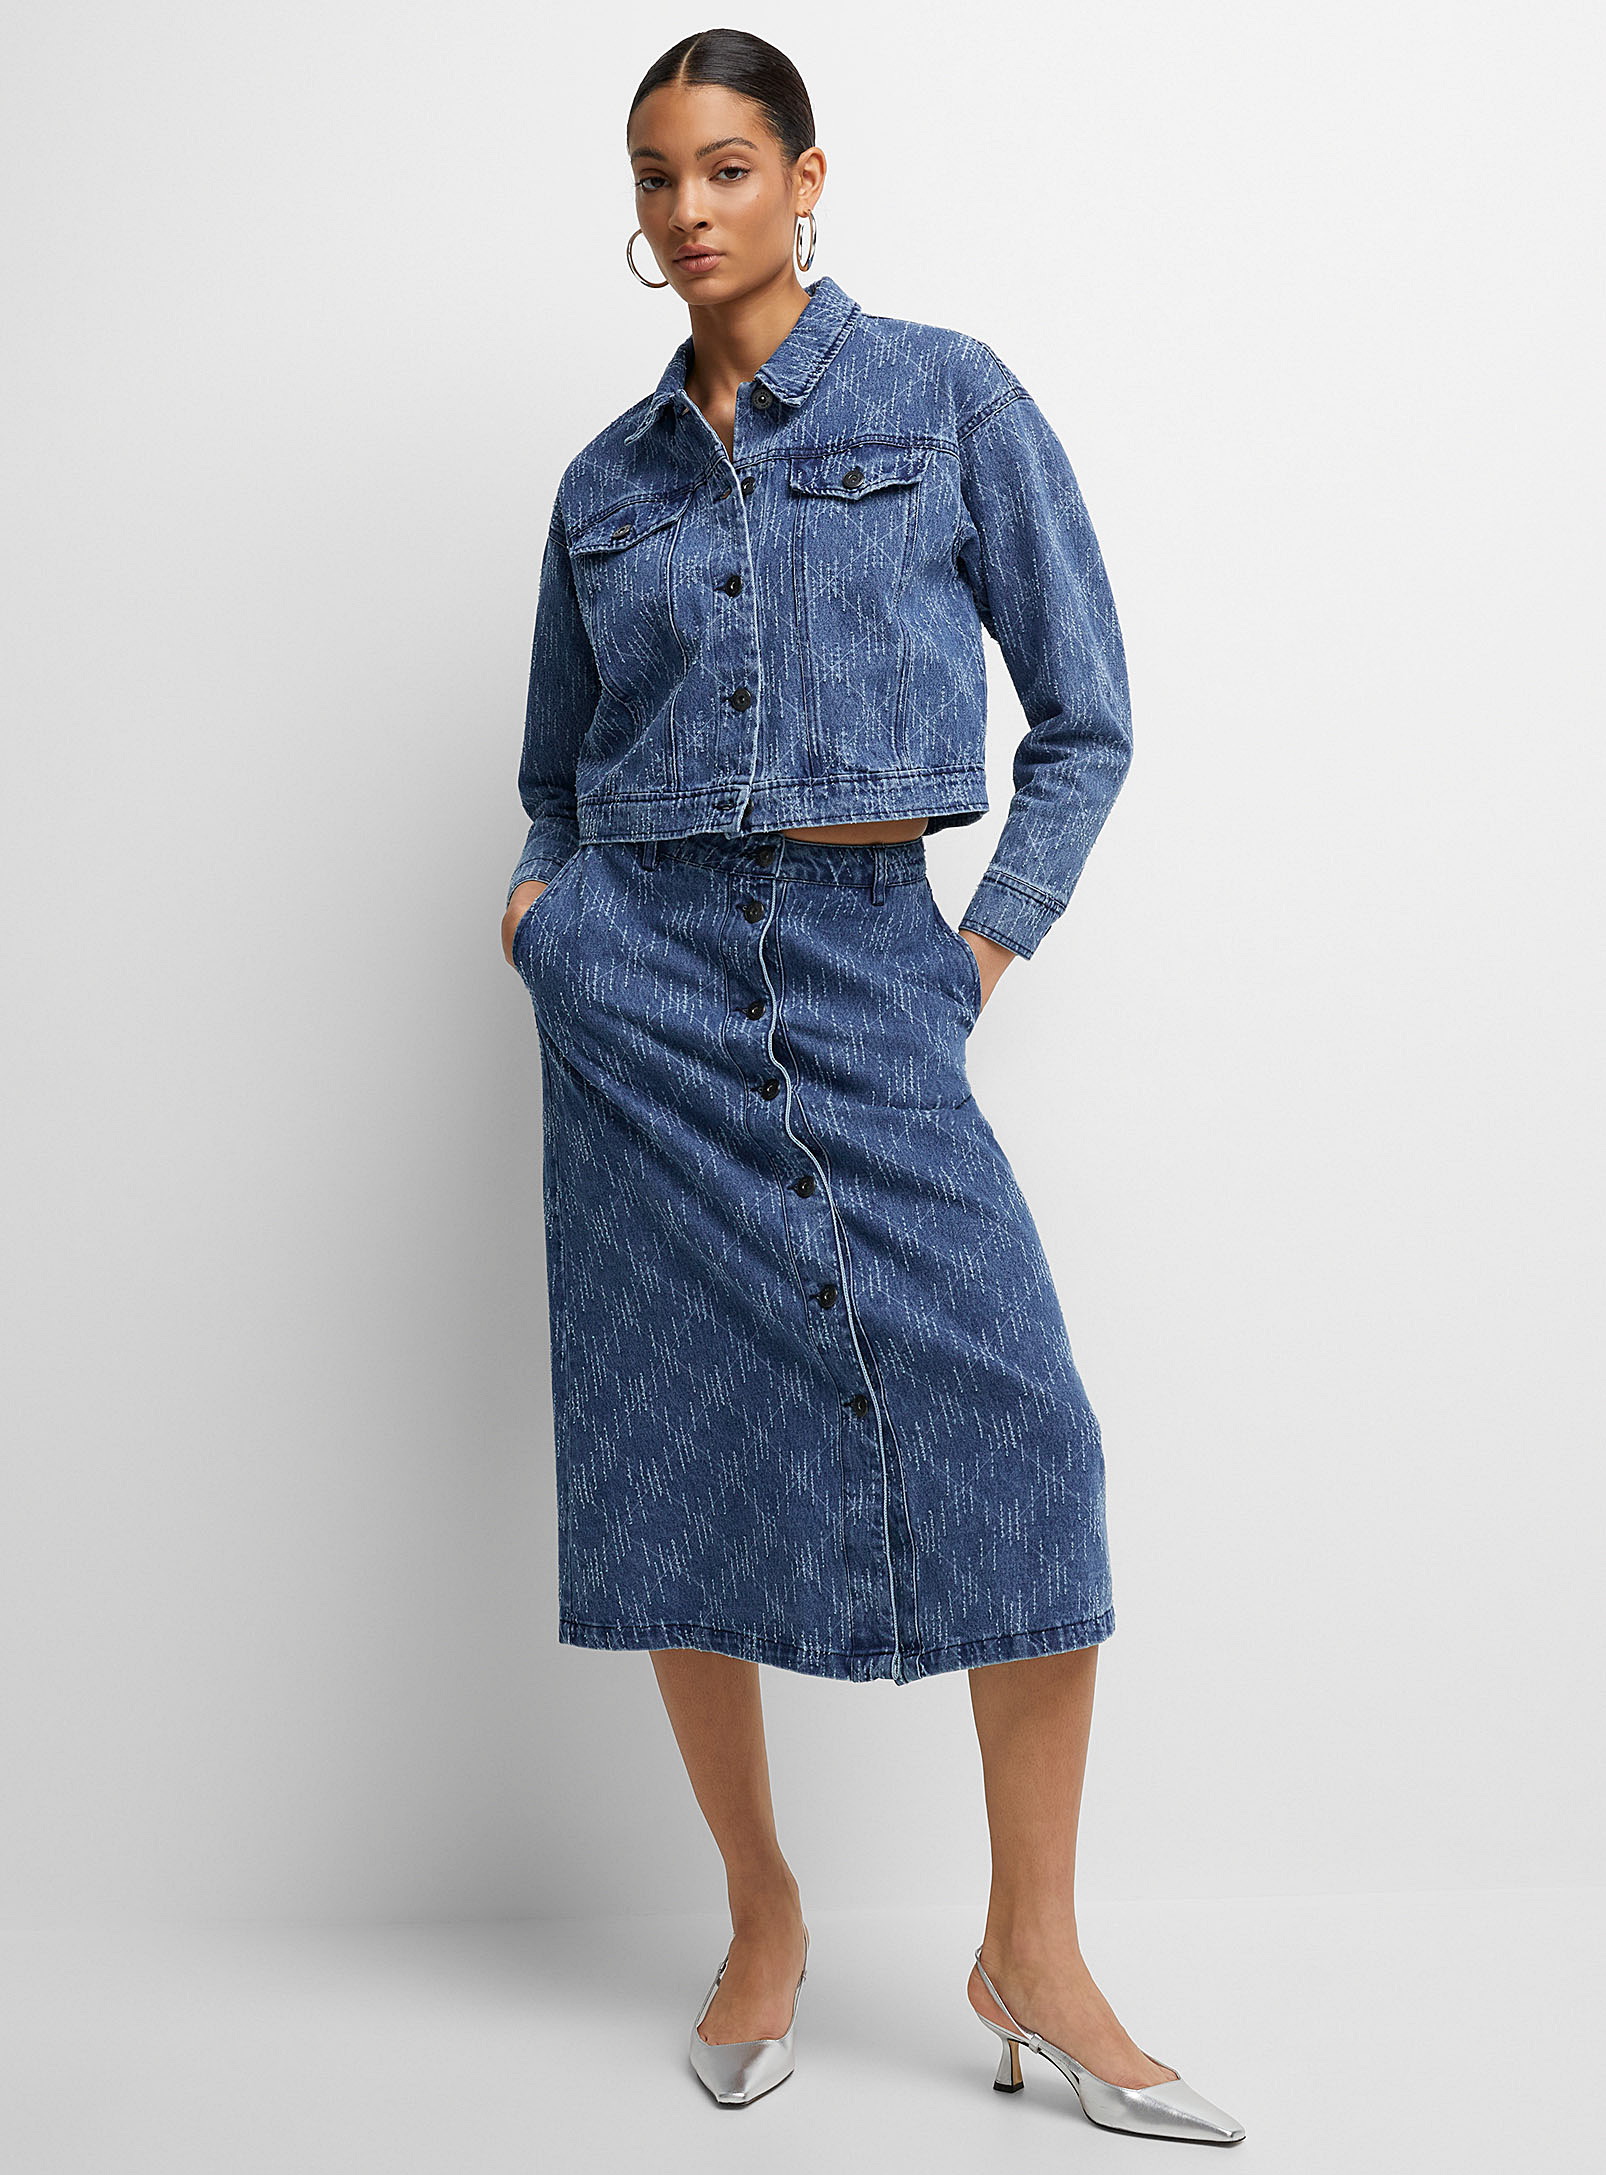 Ichi Textured Hatches Denim Skirt In Patterned Blue